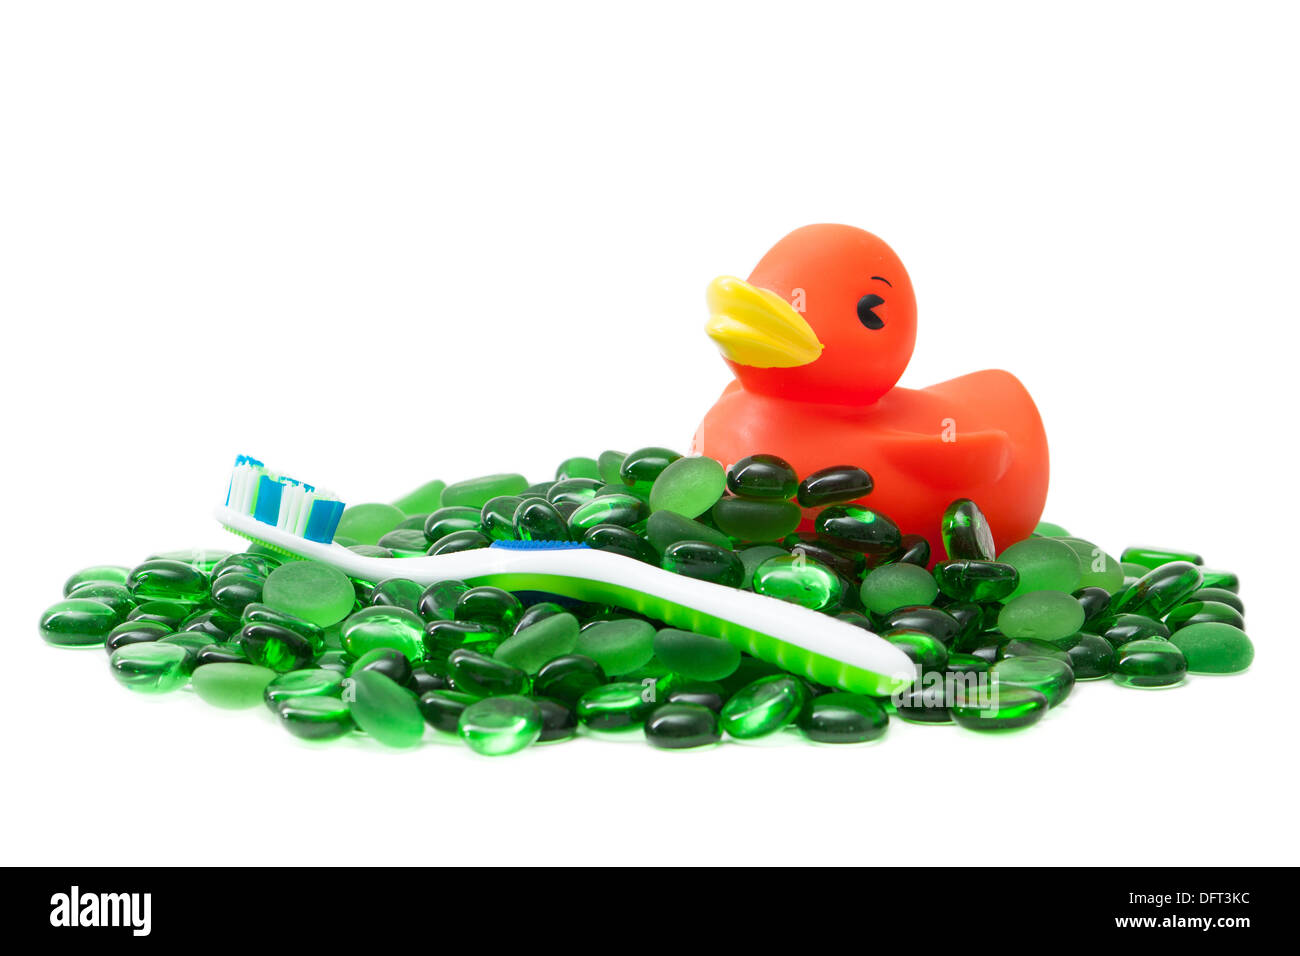 Ein Rubber Duckie und eine Zahnbürste auf einem Meer von grünen Glasperlen, isoliert auf weiss schafft ein sauberes Bild, das Kinder-Badezimmer sagt. Stockfoto